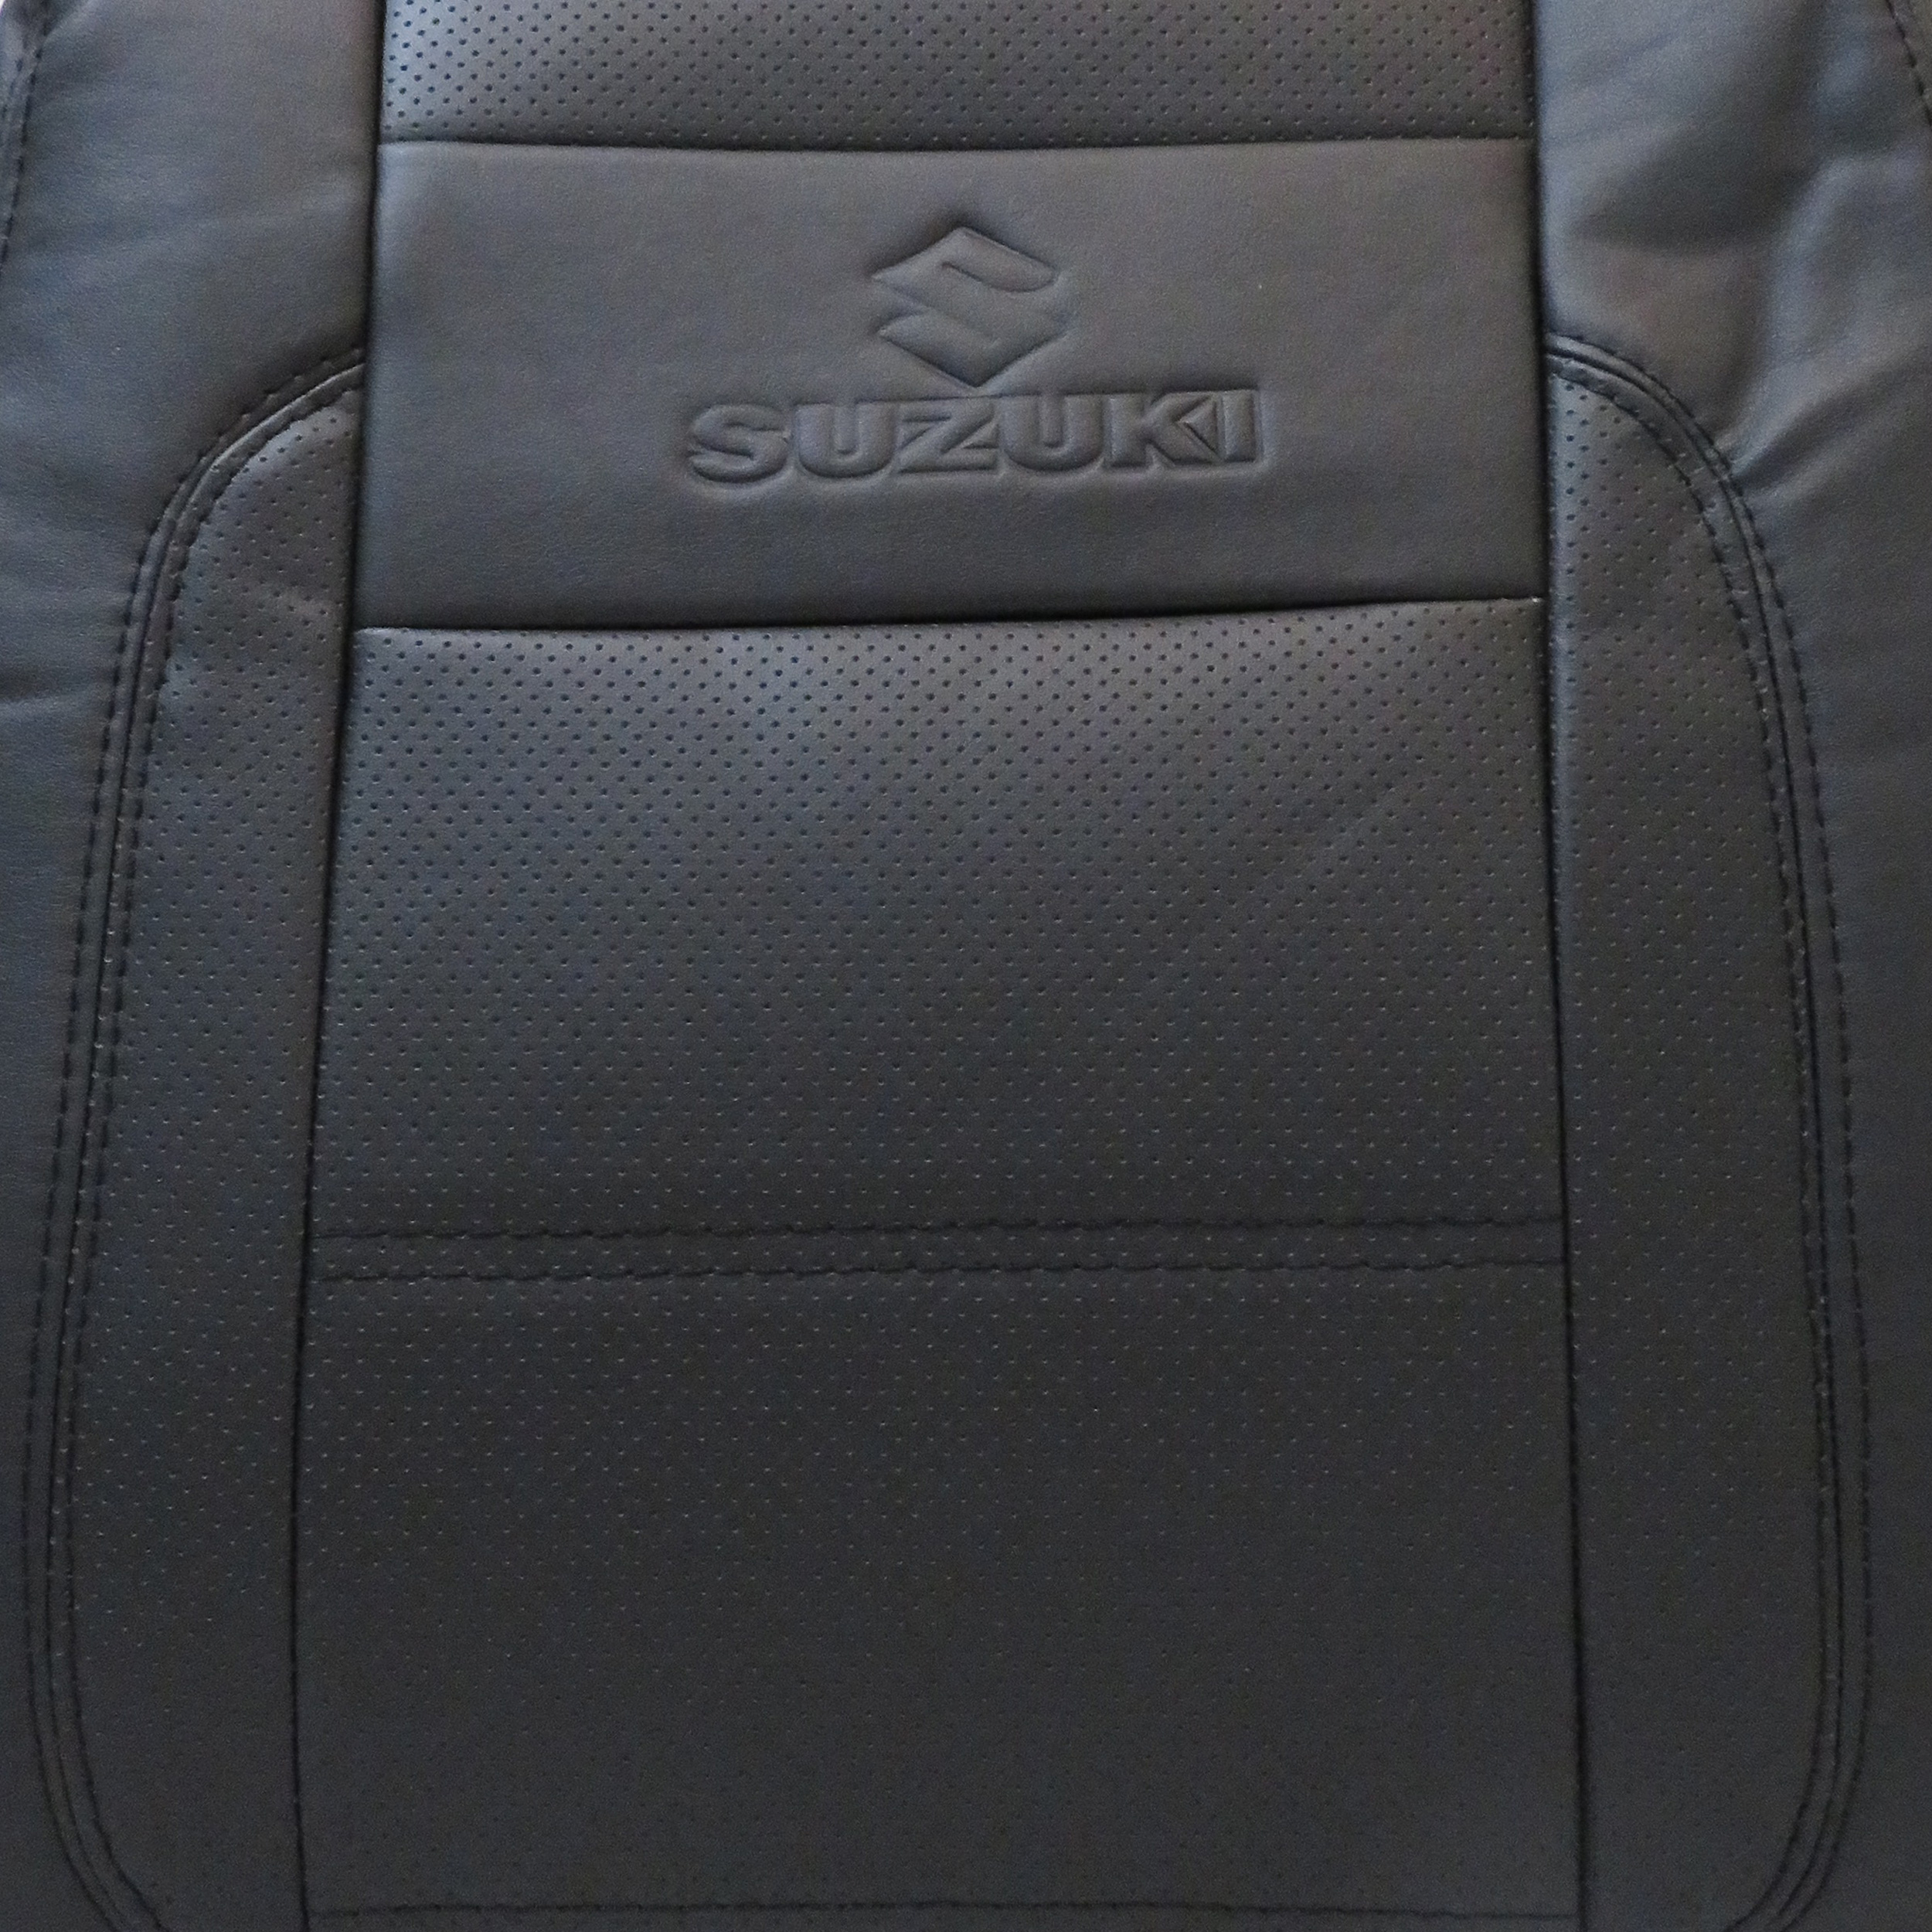 روکش صندلی خودرو مدل sv01 مناسب برای سوزوکی ویتارا